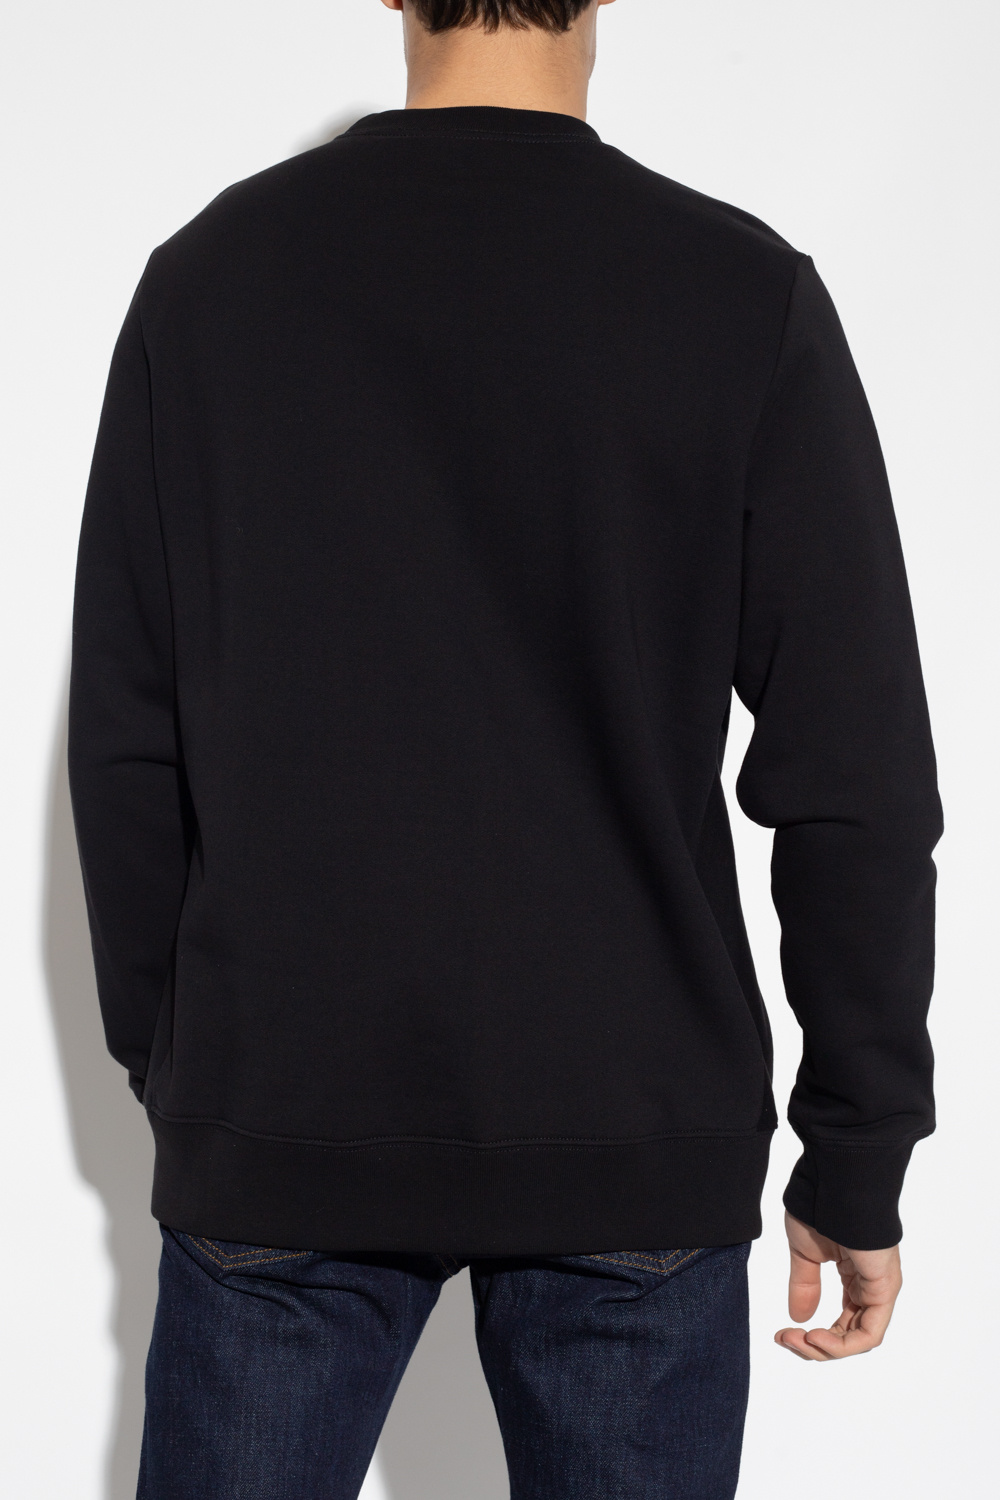 stussy basic applique hoodie navy Printed sweatshirt